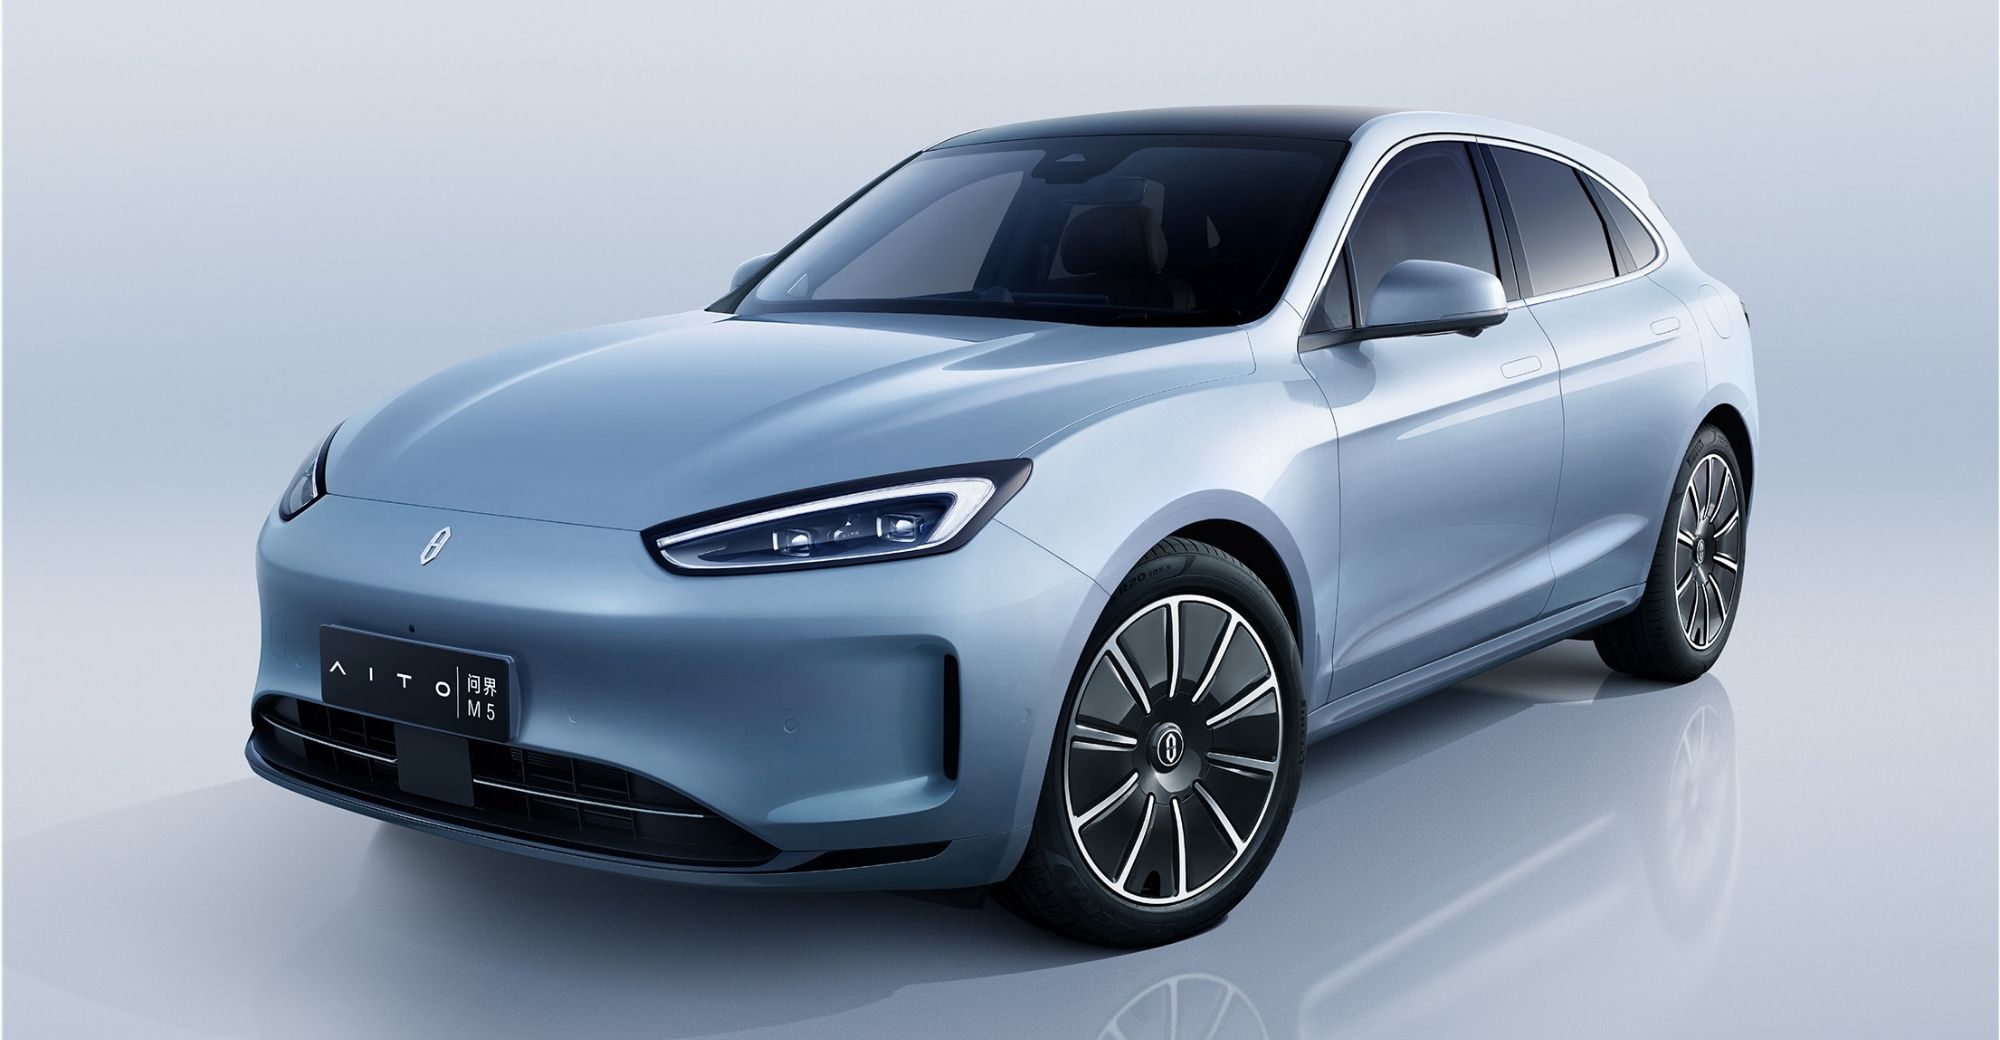 Inilunsad ng Huawei ang unang purong electric car model ng AITO, M5 electric car